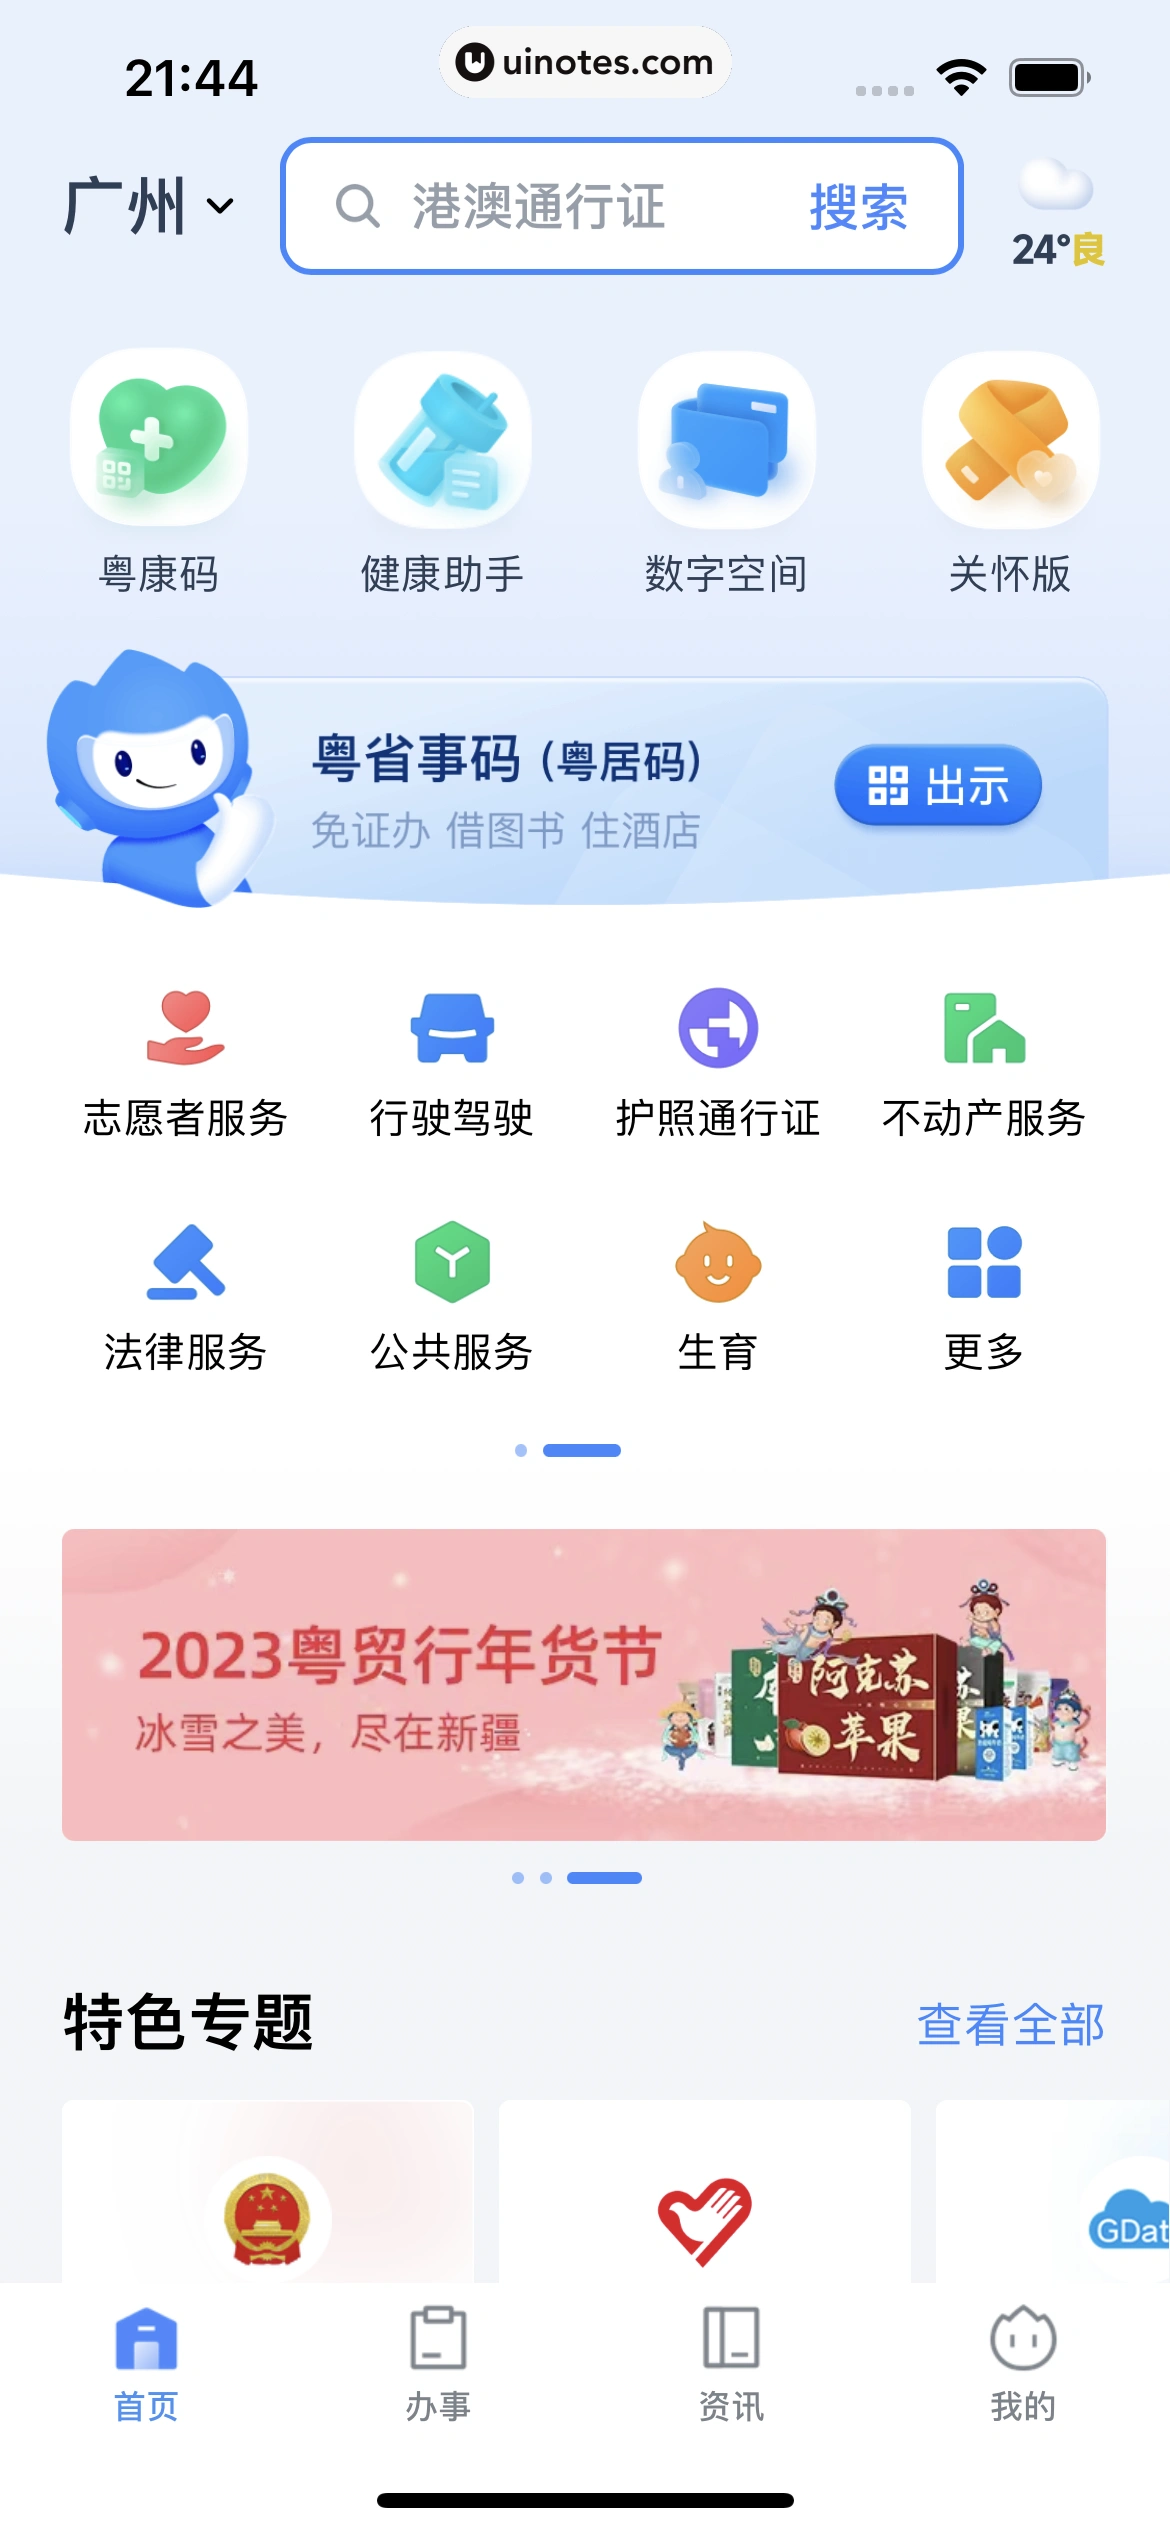 粤省事 App 截图 010 - UI Notes